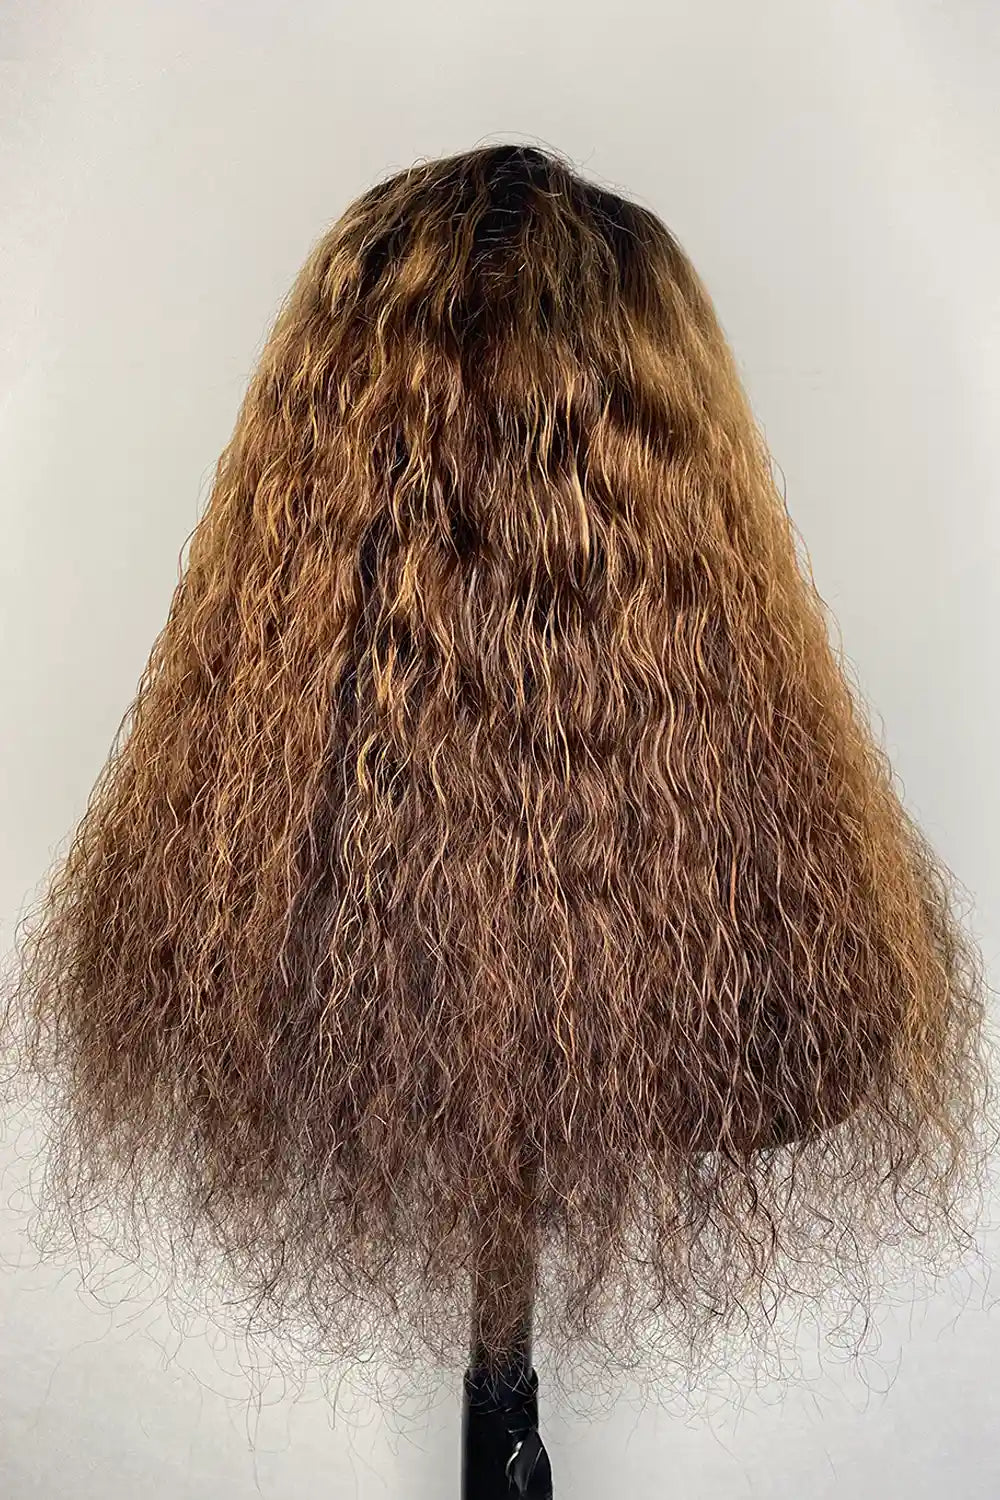 Pelucas de diseñador: hermosa peluca de encaje HD 5x5 con onda profunda de color marrón castaño